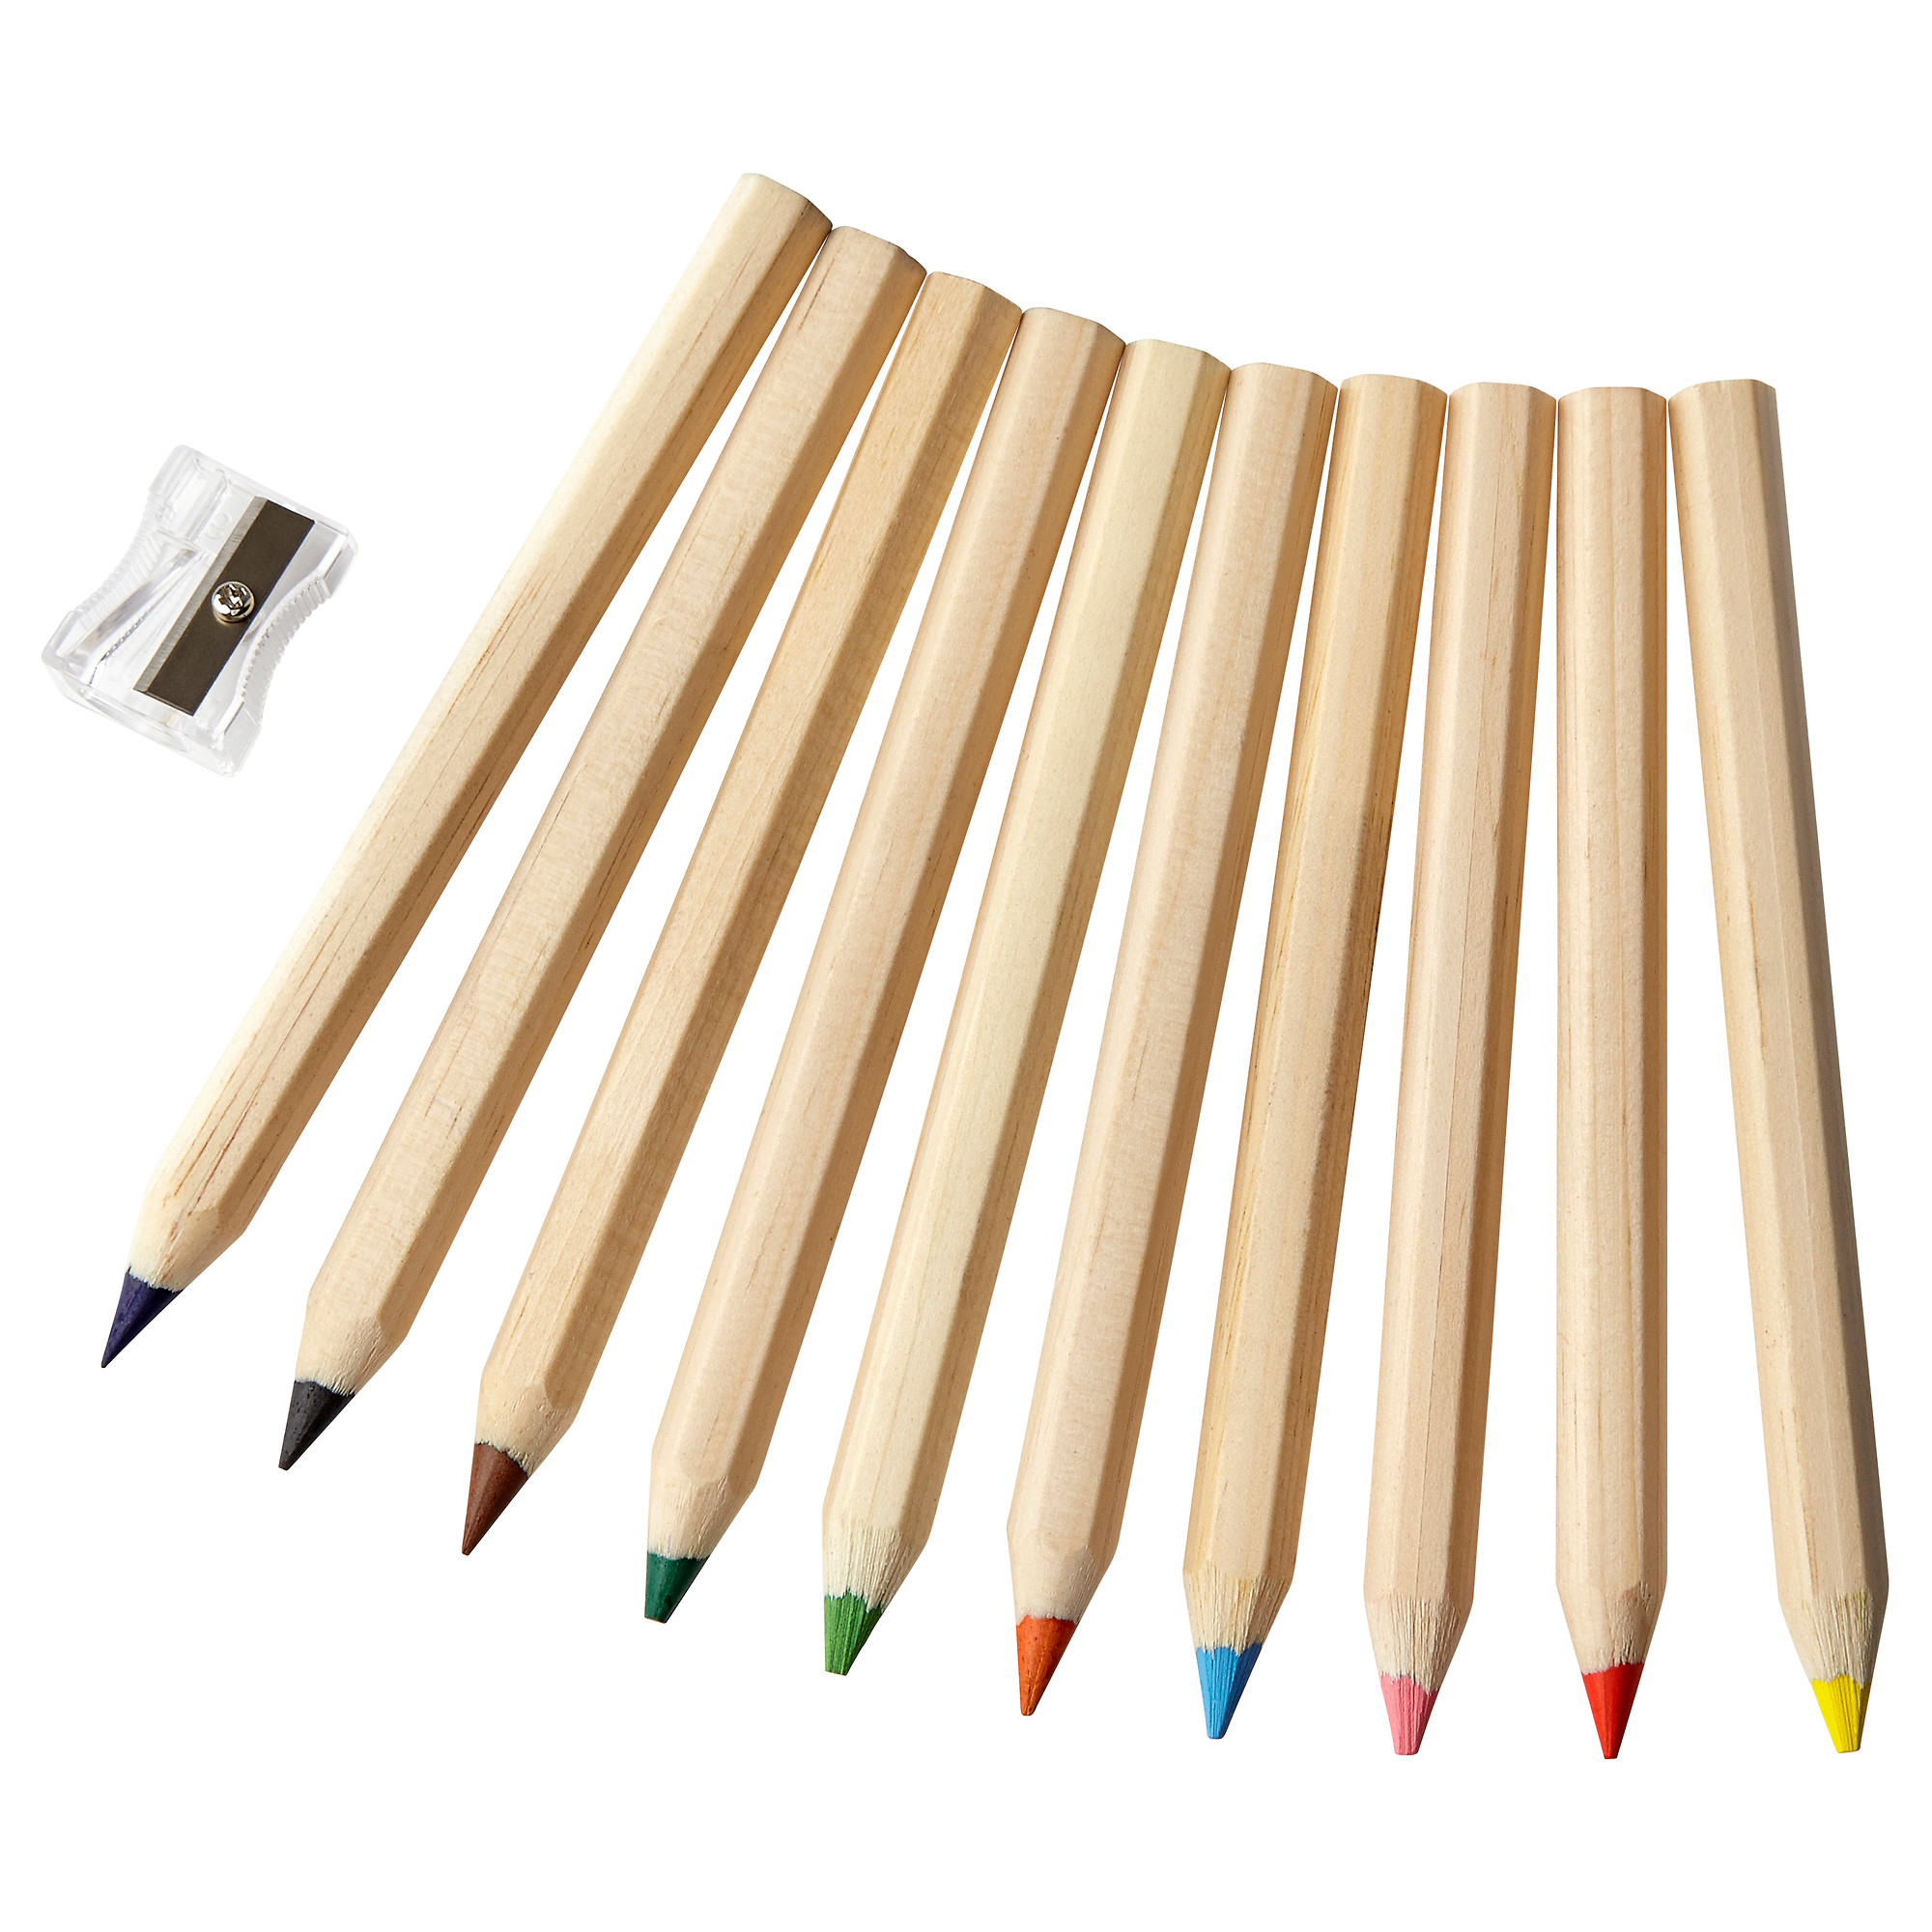 Ten pencils. Карандаши Mala икеа. Цветные карандаши ikea. Ikea карандаши мола. Ikea Mala карандаши набор.